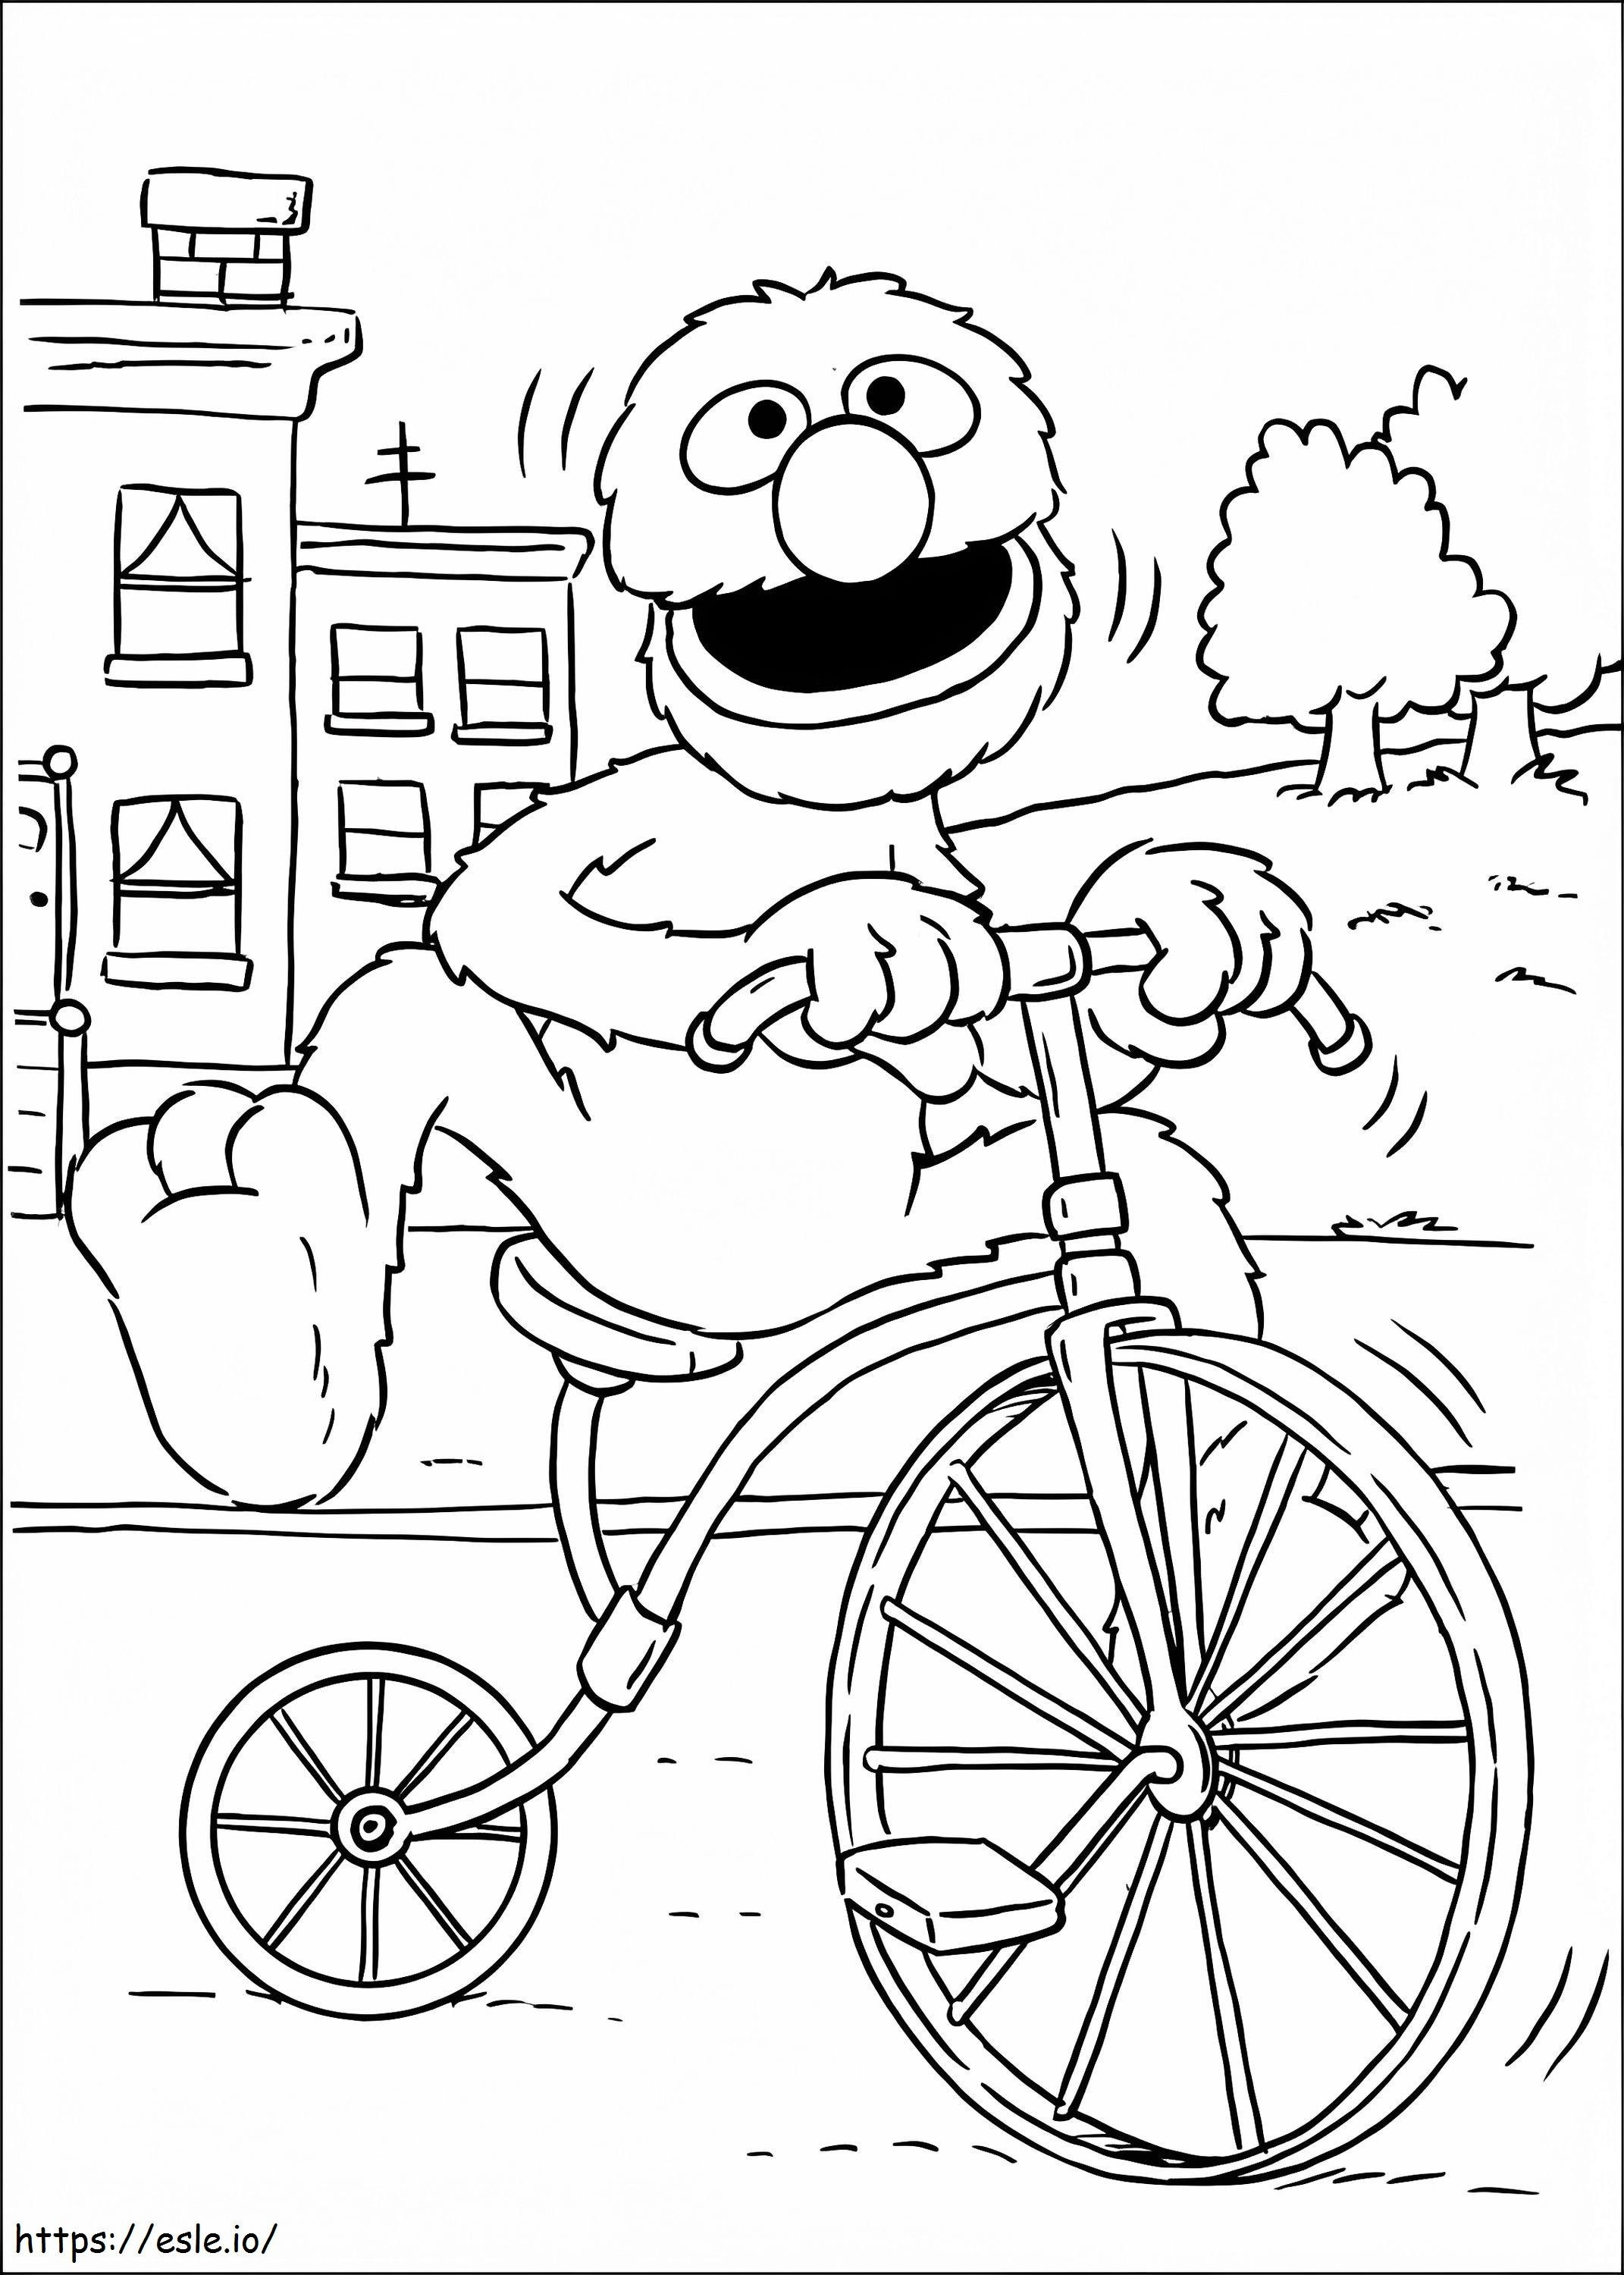 Grover op de fiets kleurplaat kleurplaat